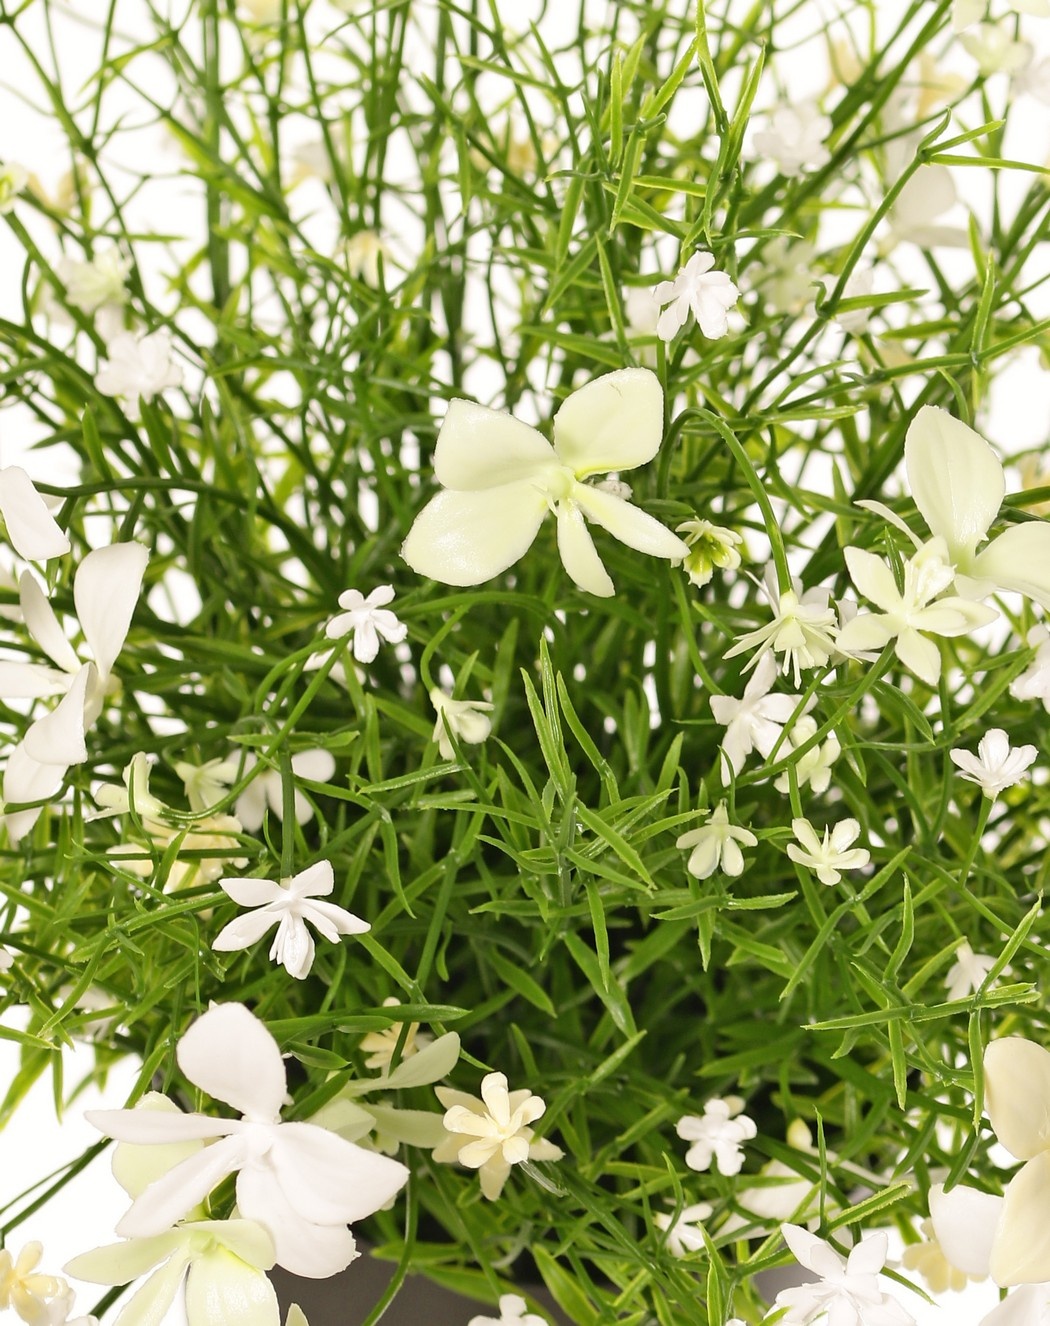 Impatiens (Fleissiges Lieschen) Pflanze, mit 184 Blüten, Vollkunststoff, H 25 cm, Ø 25 cm, im Topf